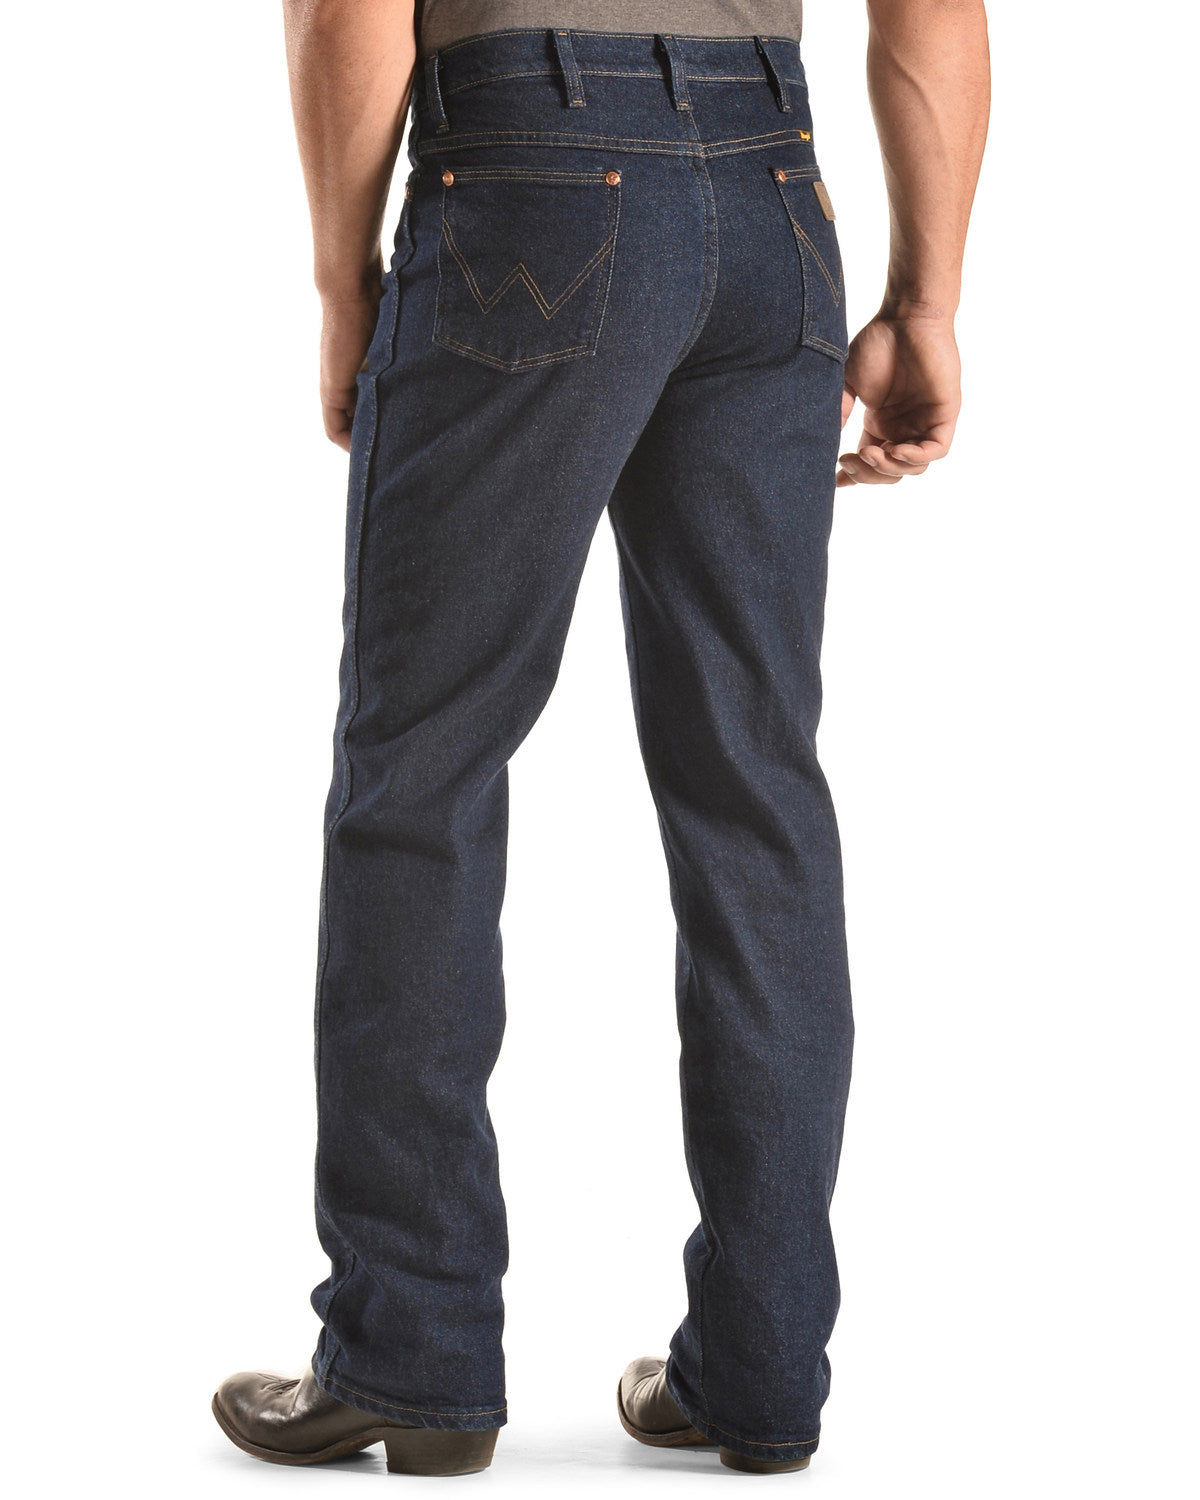 Men's Cowboy Cut Slim Fit Stretch Jeans